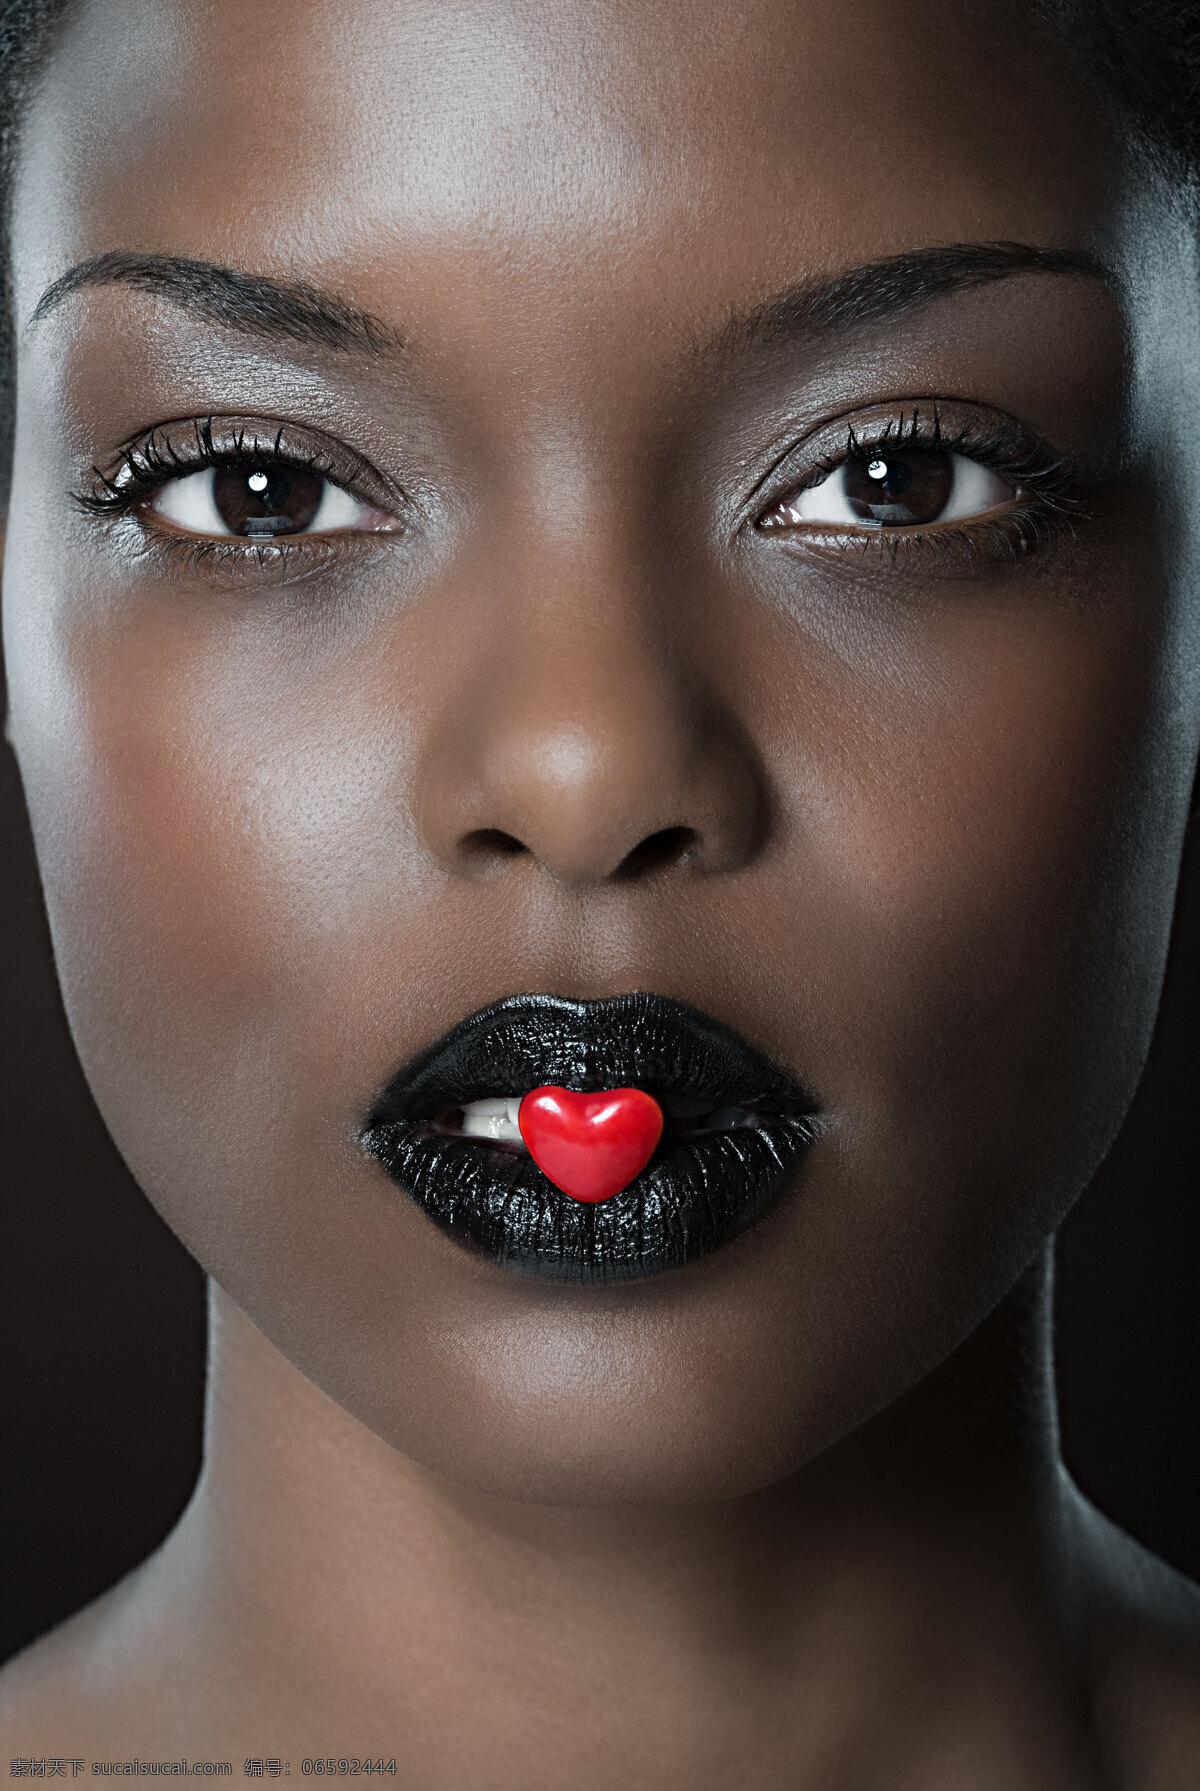 魅力 黑人 模特 美女 女人 红色 心形 糖果 黑色 嘴唇 欧美 表情 黝黑皮肤 化妆 柔嫩 光泽 性感 创意 海报 高清图片 美女图片 人物图片